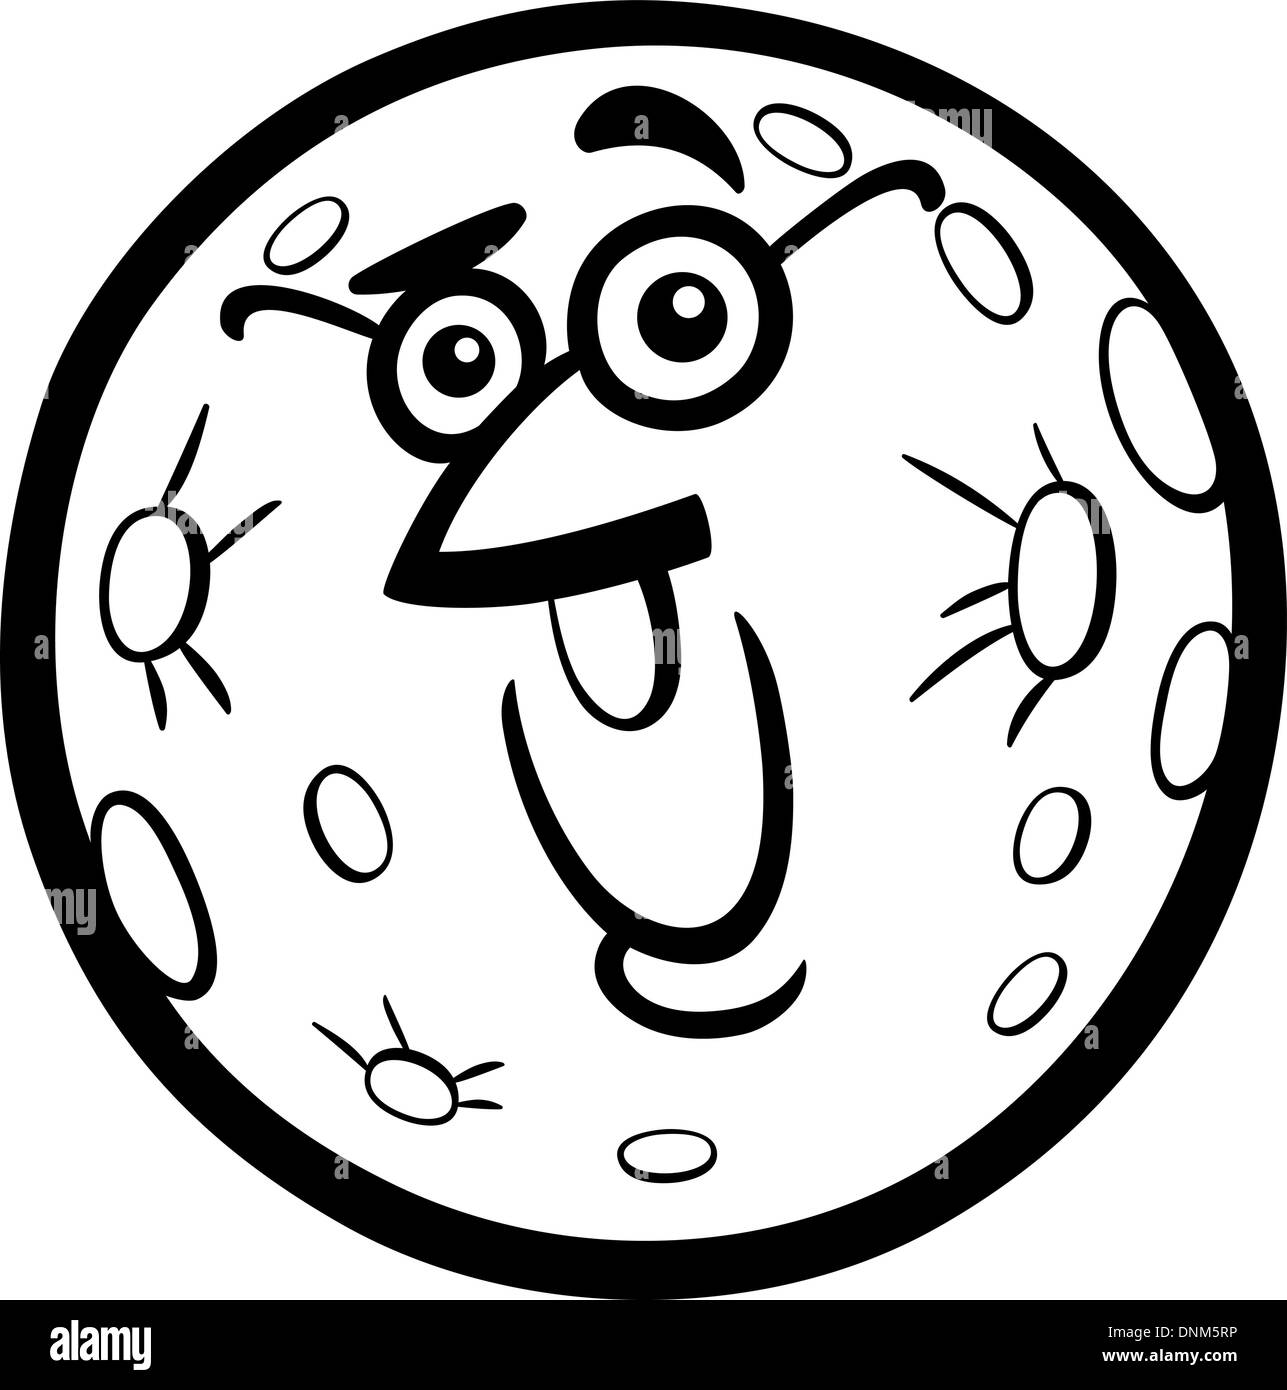 Cartoon noir et blanc Illustration de bande dessinée planète Mercure drôle personnage mascotte pour les enfants à colorier Livres Illustration de Vecteur